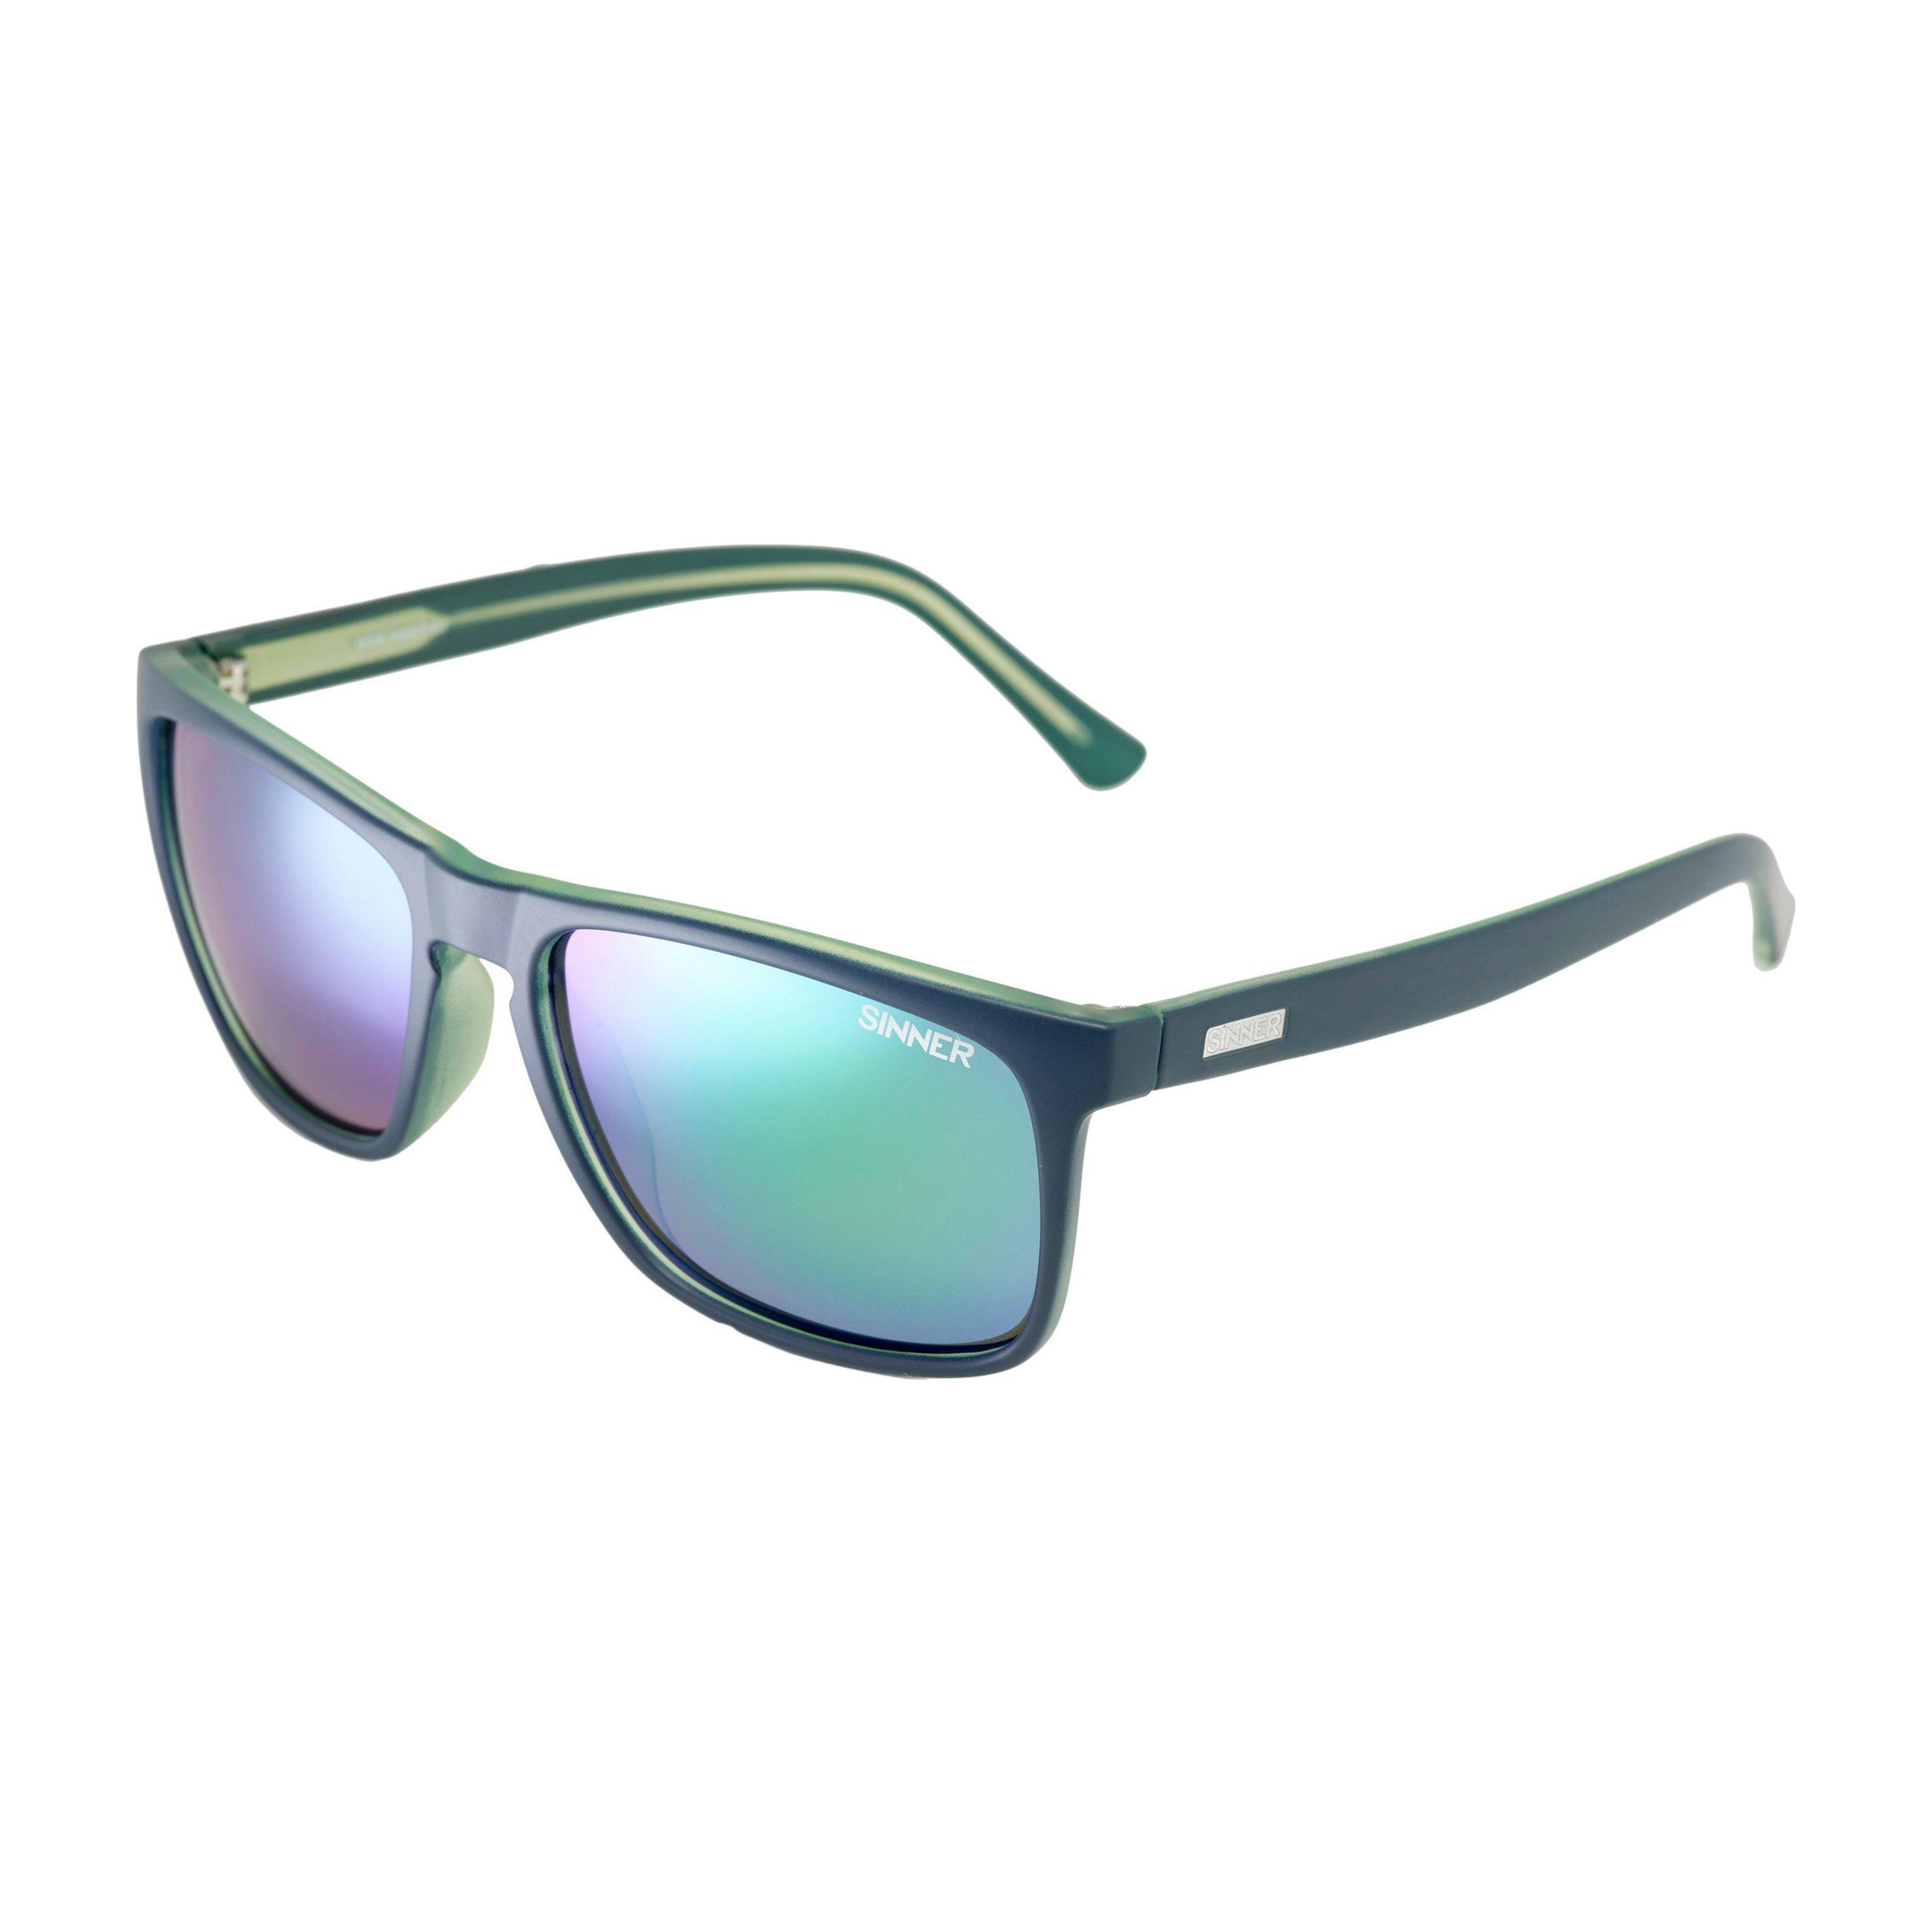 Oak Cx Sintec Sunglasses Blue Green